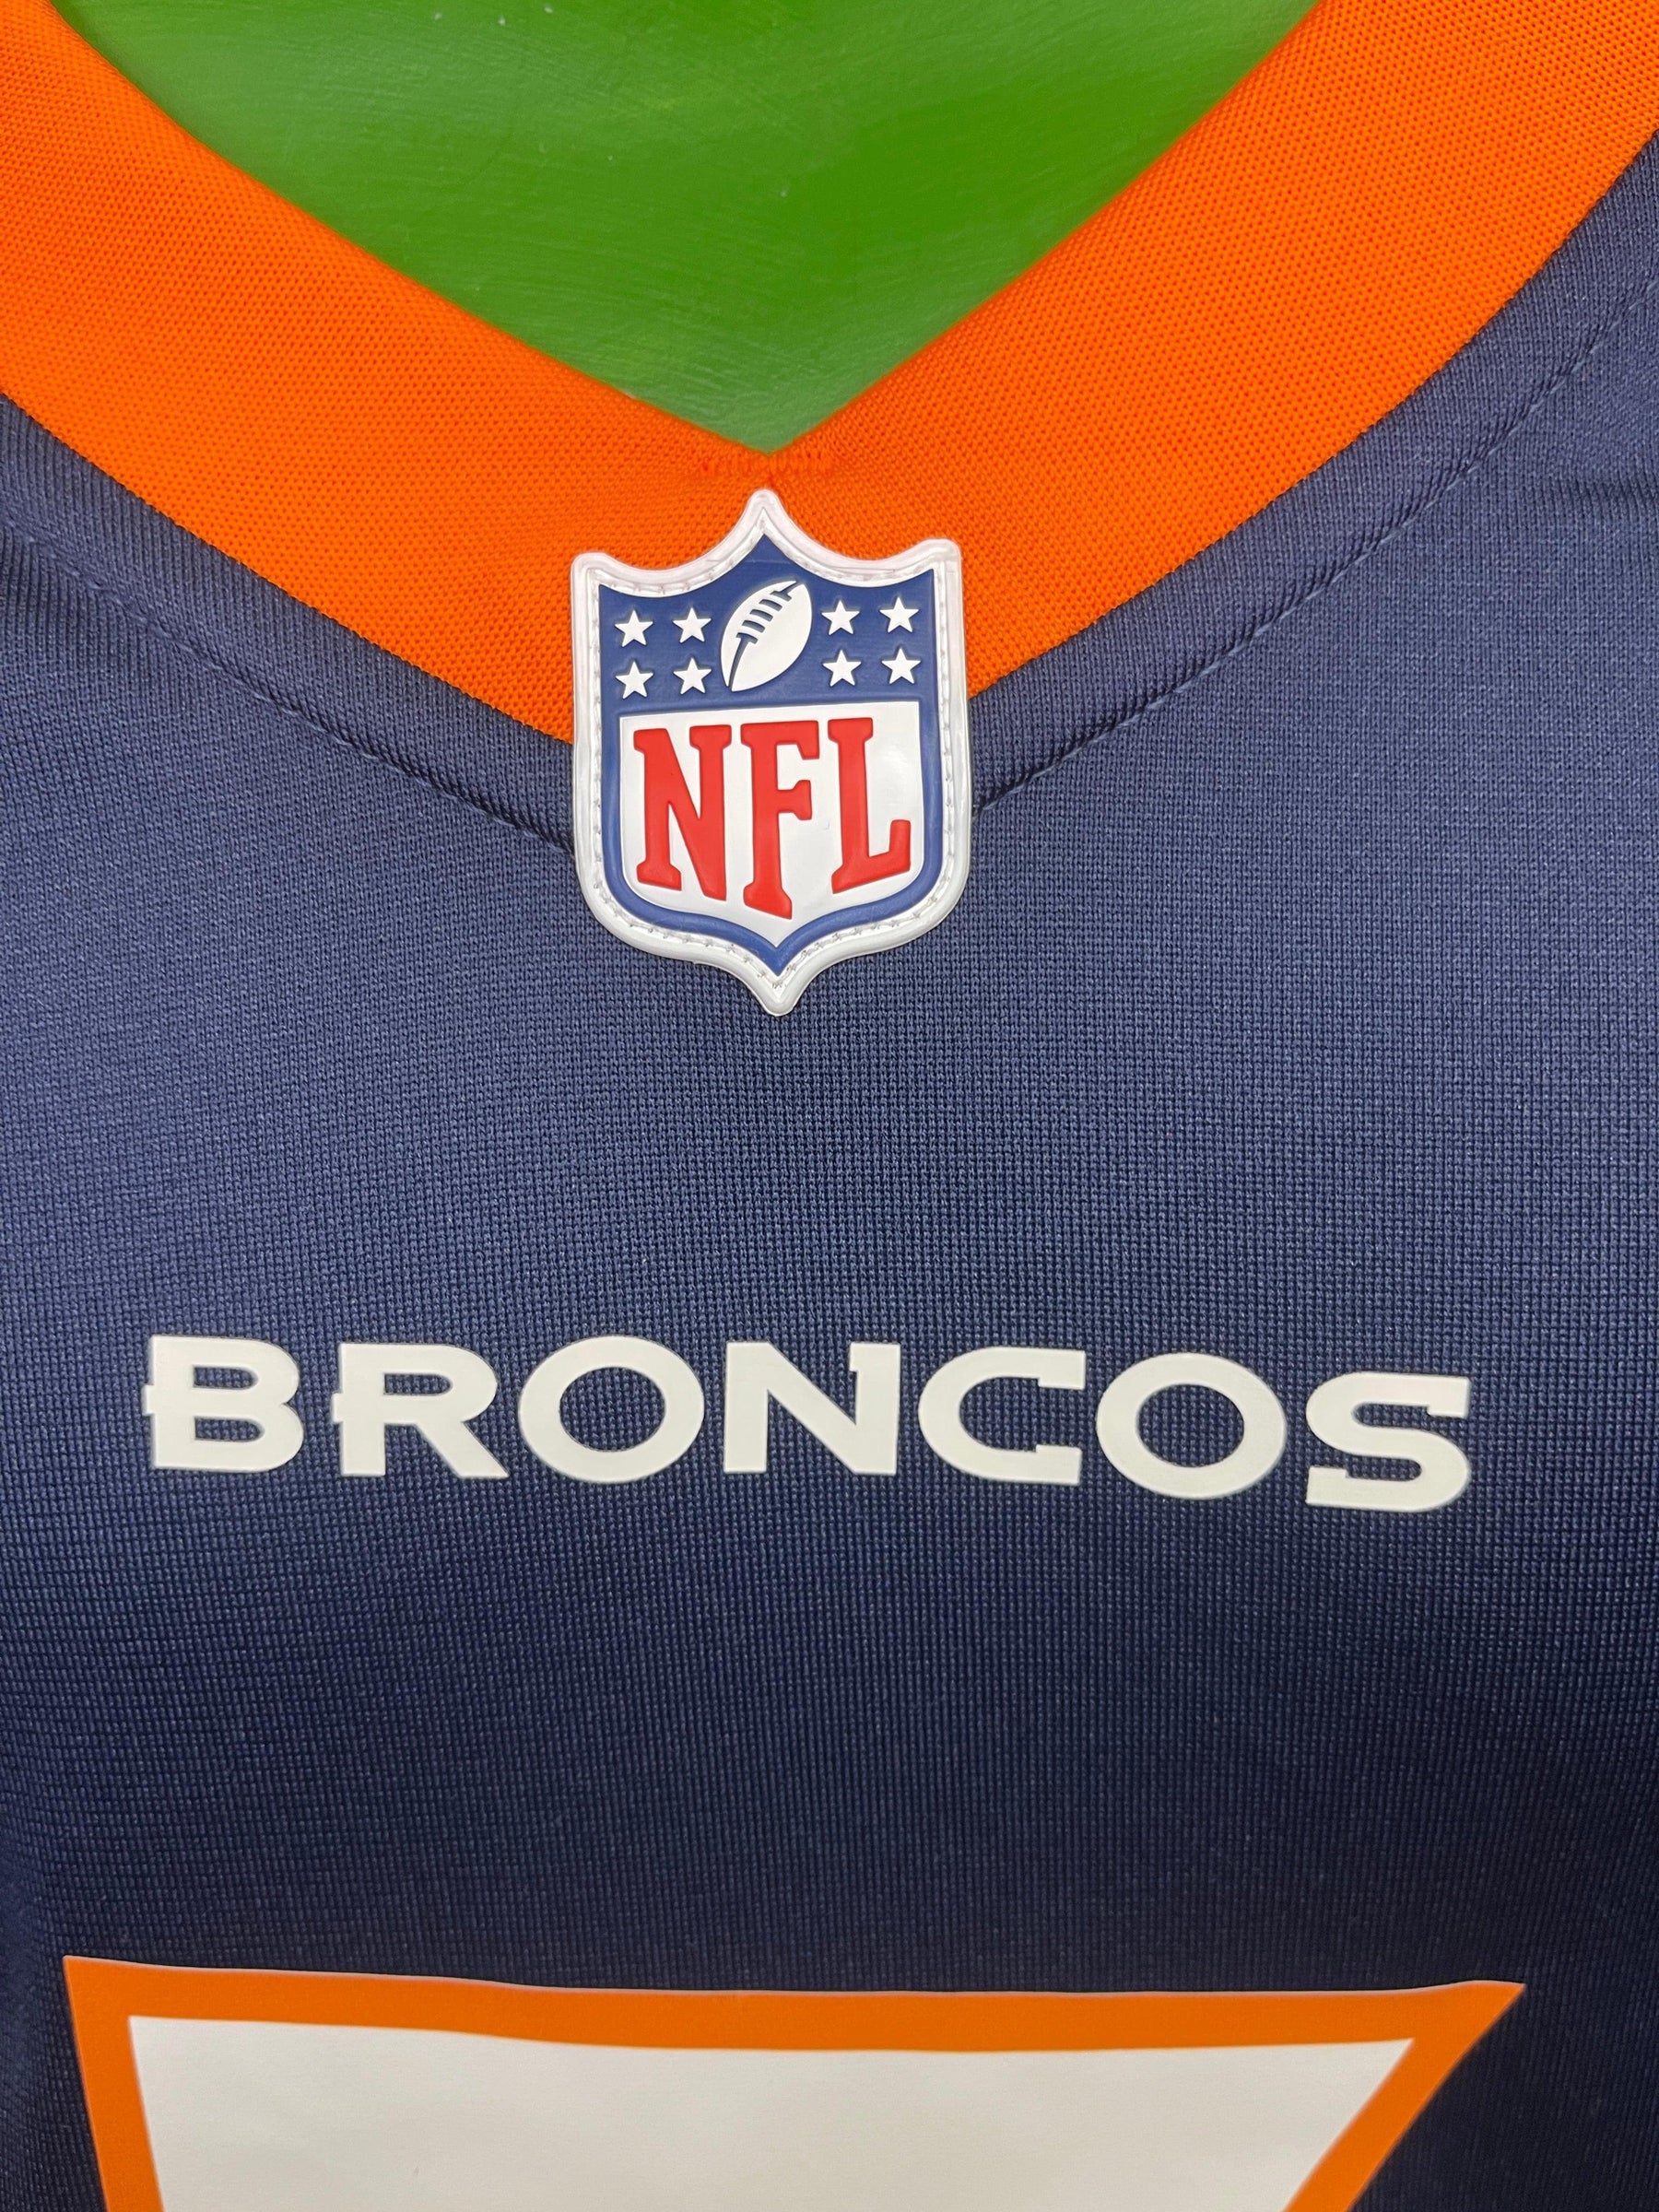 NFL Denver Broncos Russell Wilson #3 Game Jersey Men's Large NWOT